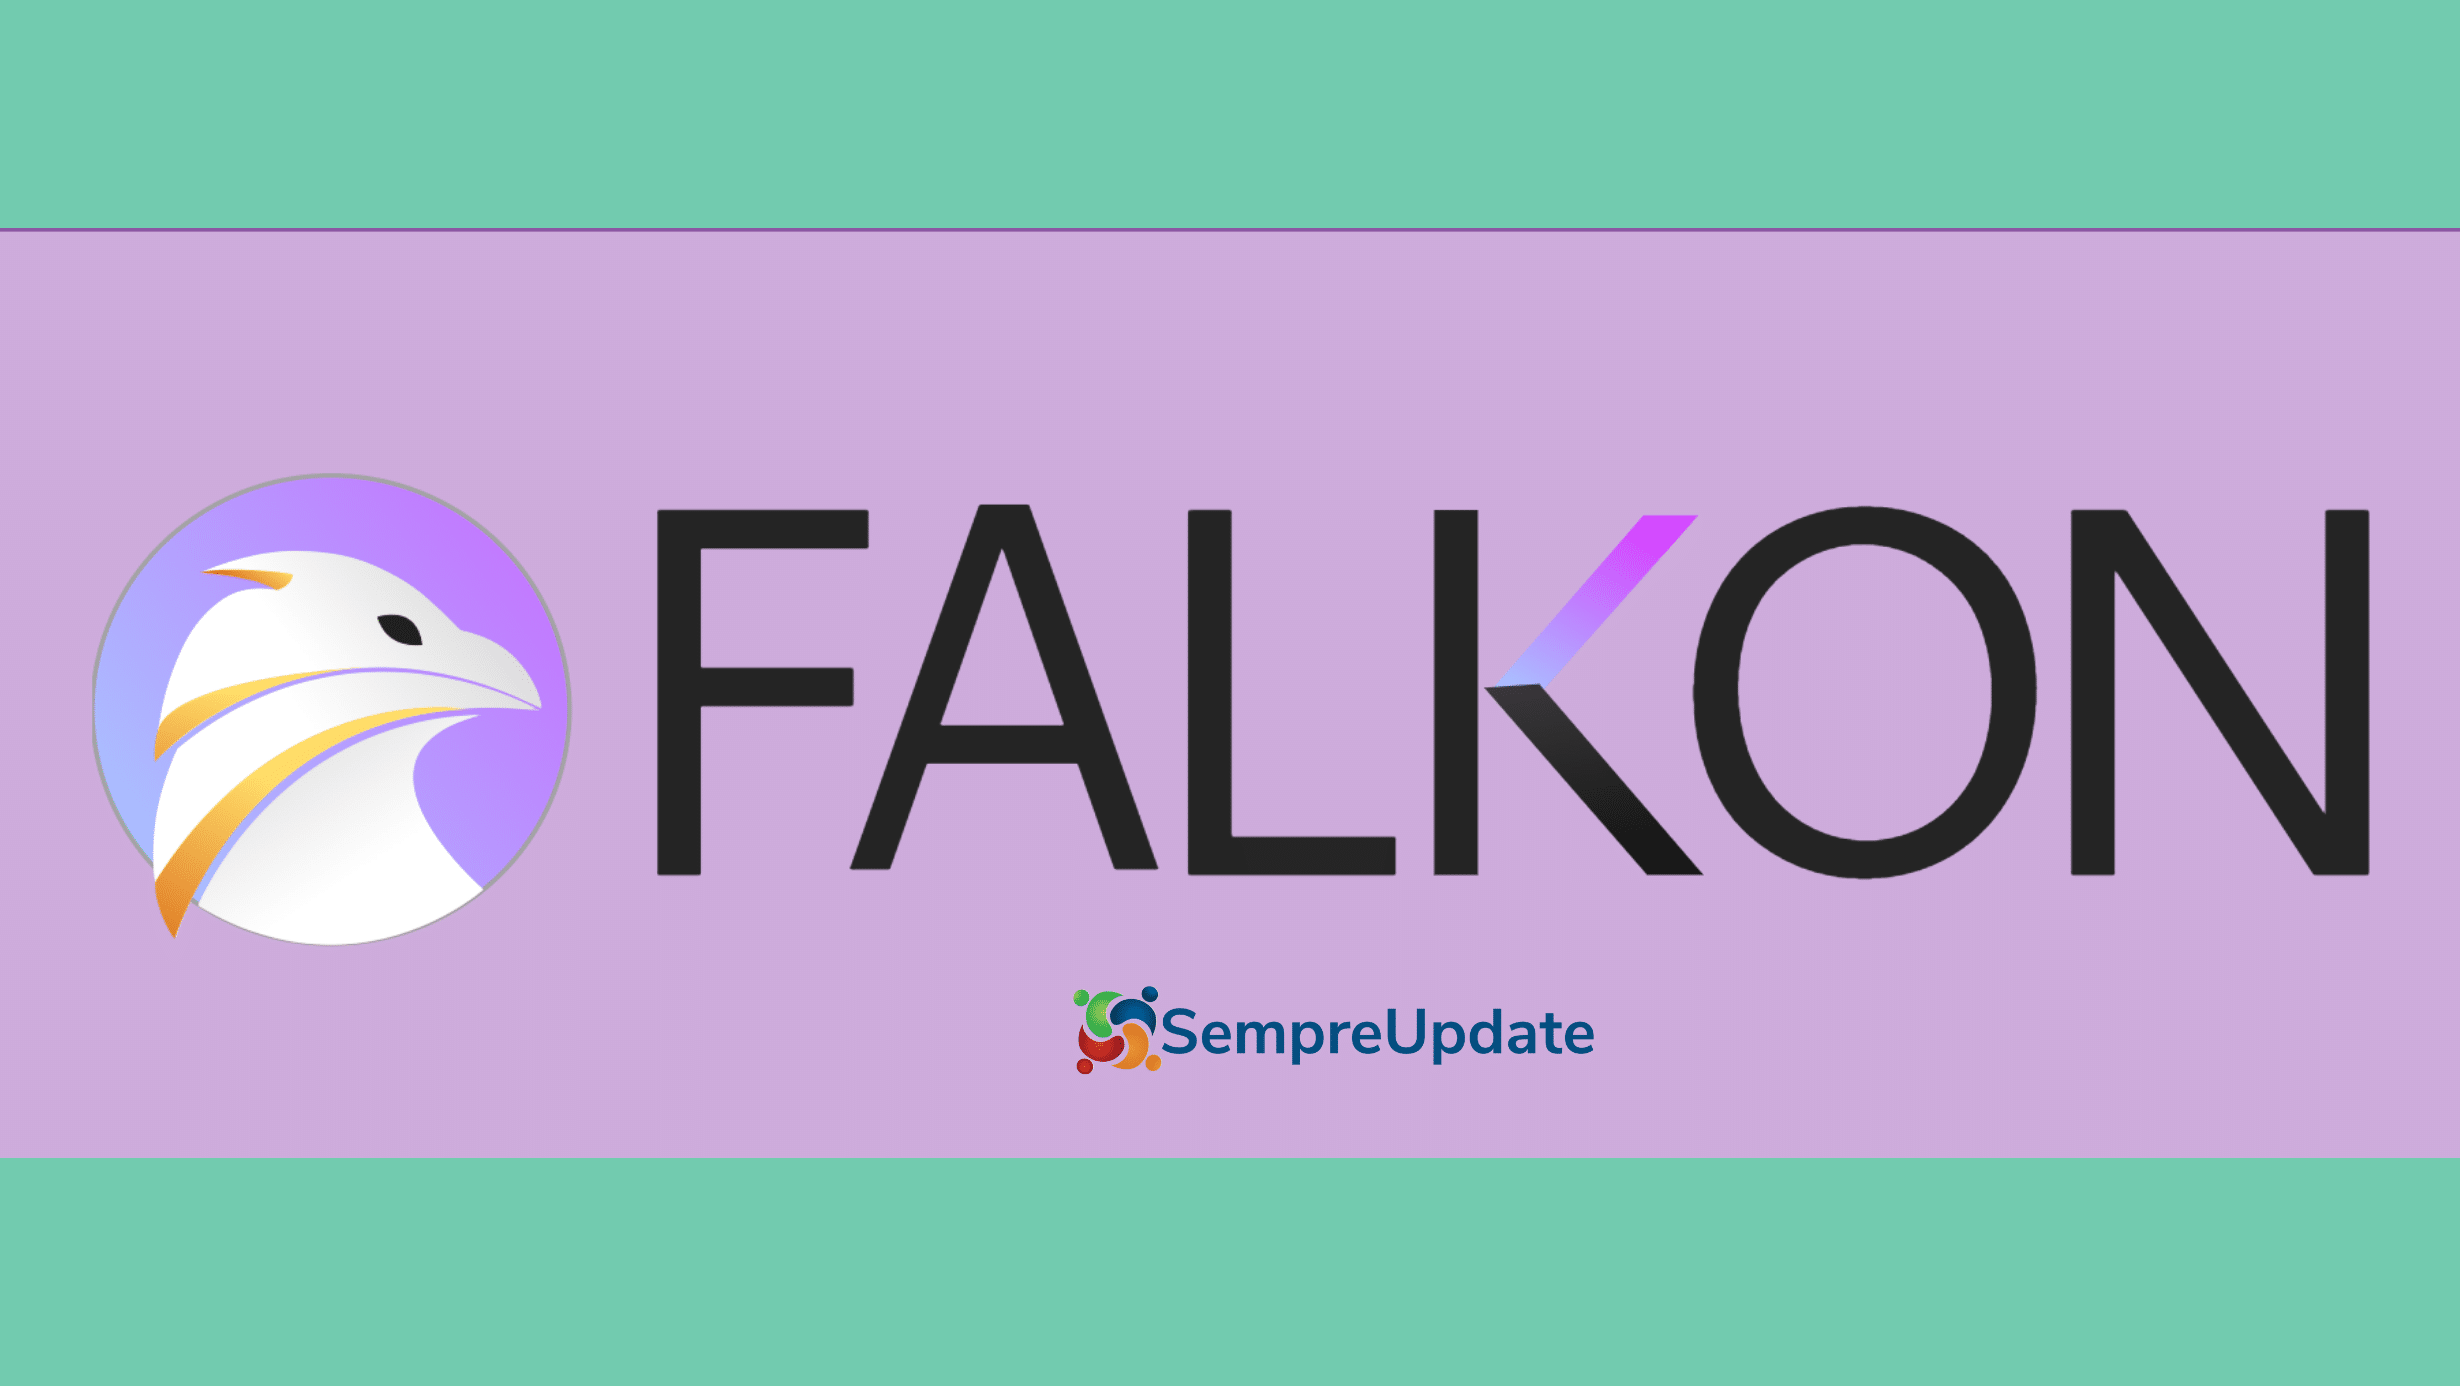 Navegador Falkon do KDE tem primeira grande atualização depois de quase três anos